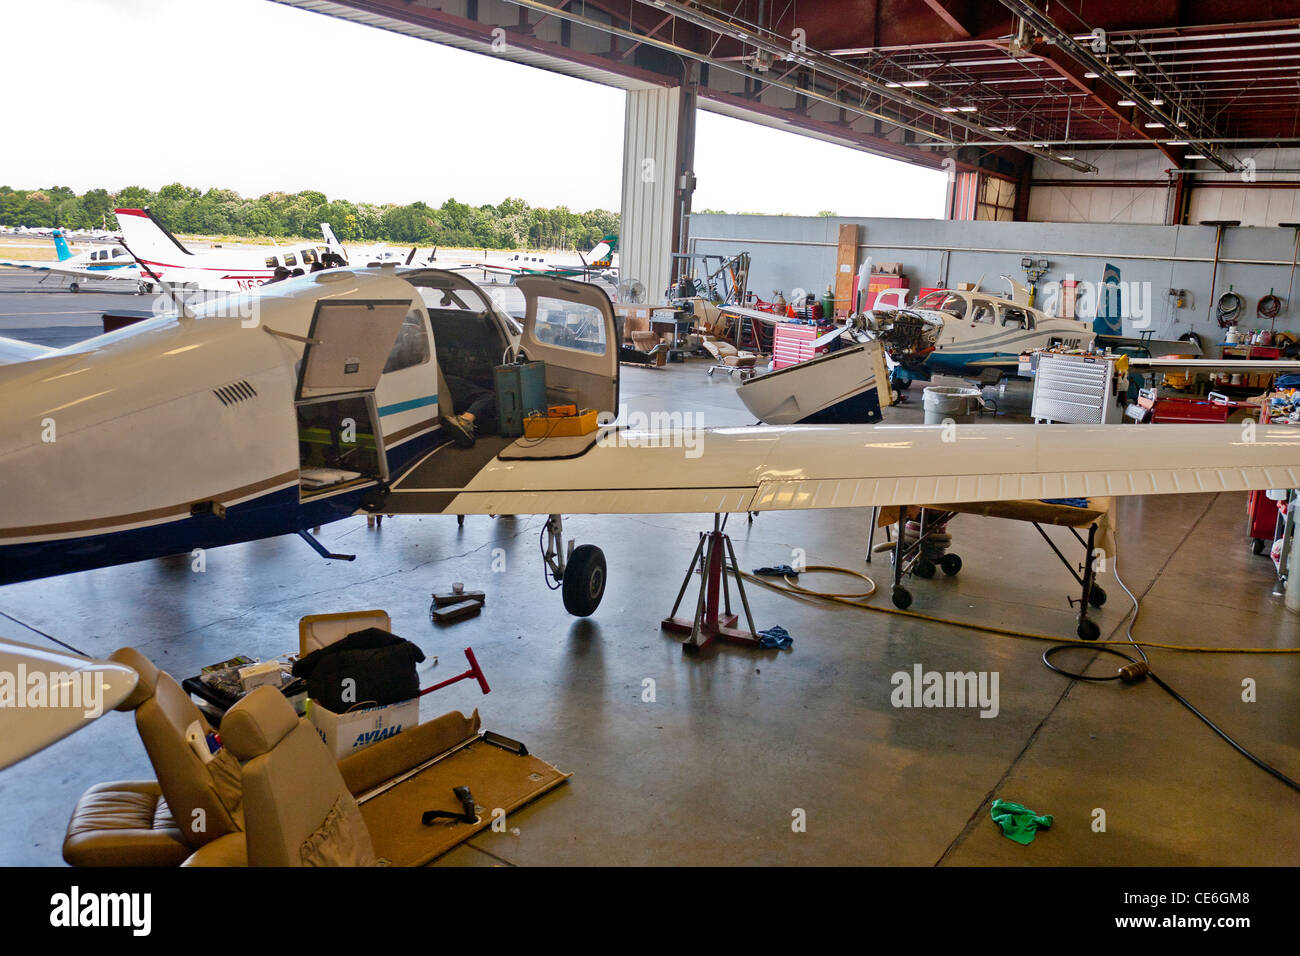 Un groupe de s'asseoir à l'intérieur de l'avion l'avion hanger ayant terminé les réparations du moteur d'avion d'être moteur d'avion mécanique. Banque D'Images